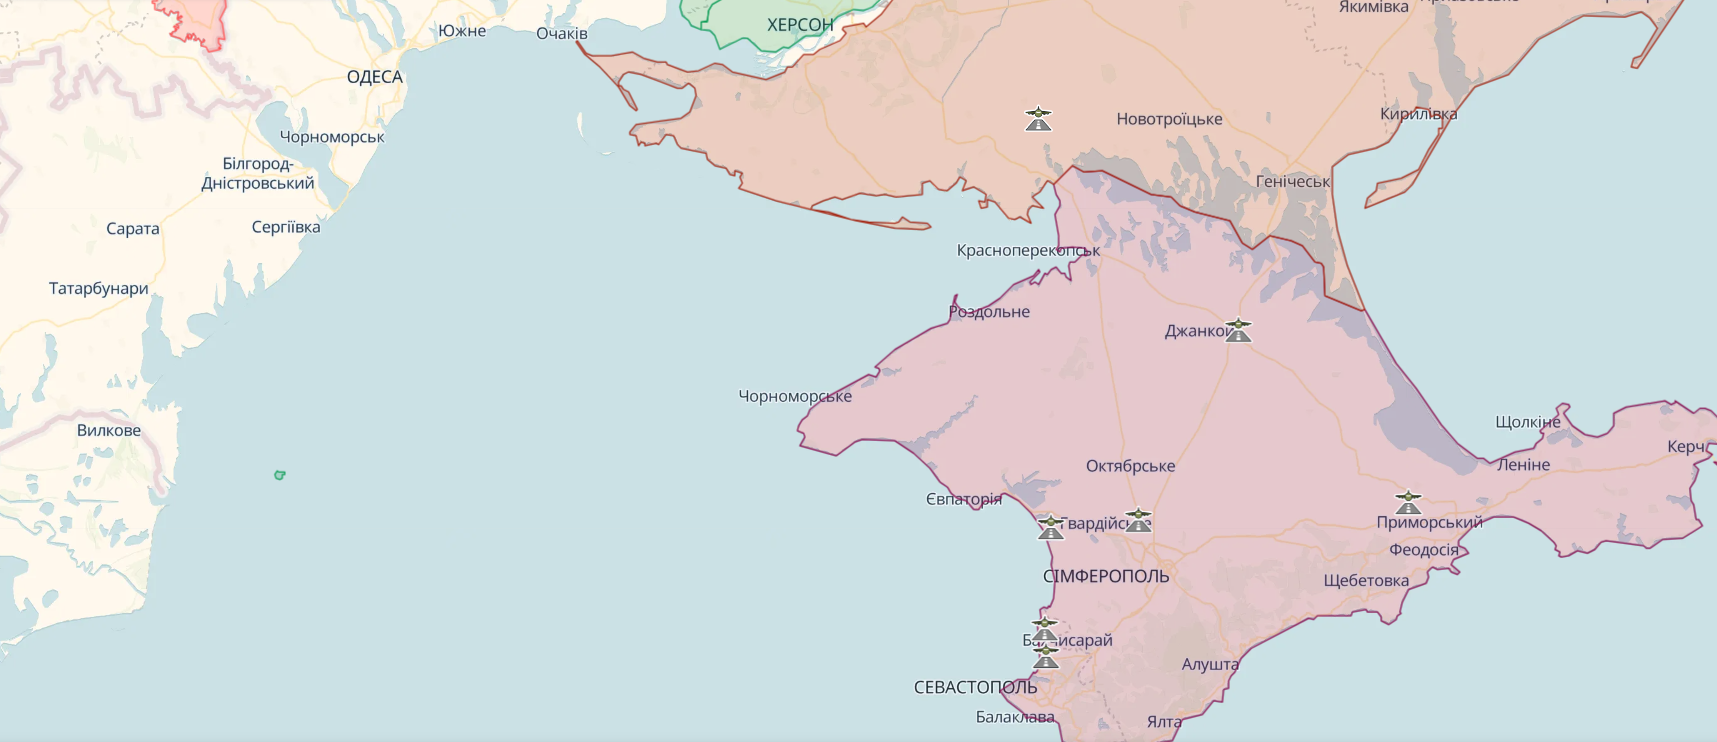 Україна спробувала атакувати морські платформи "Чорноморнафтогазу": у британській розвідці назвали причину  